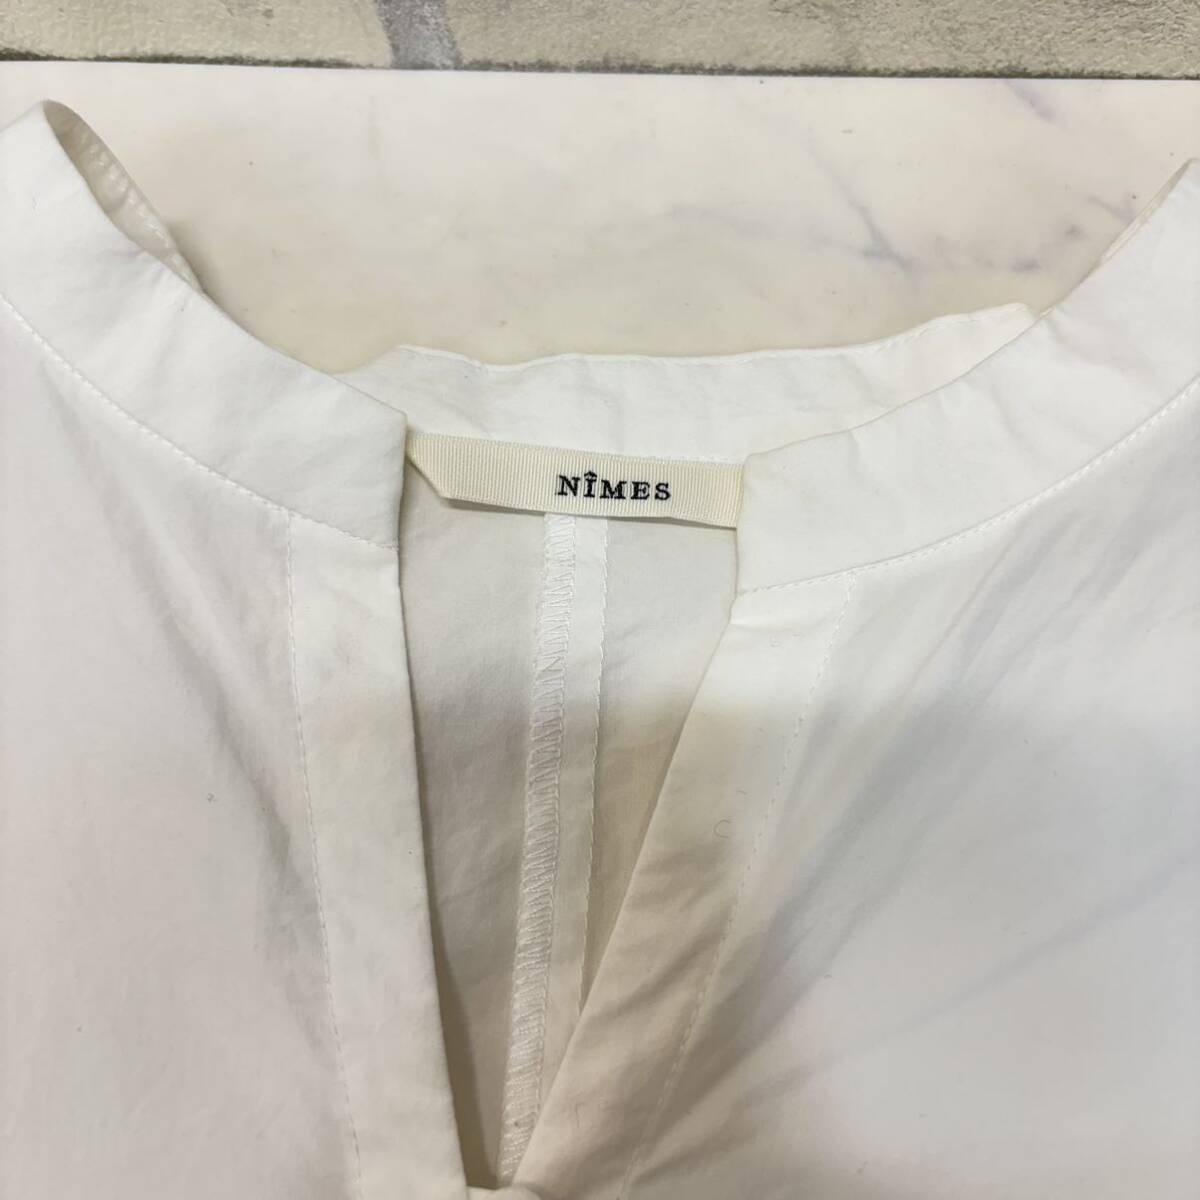  прекрасный товар NIMES 7 минут рукав блуза рубашка белый размер F хлопок 100% женский Nimes длинный рукав 